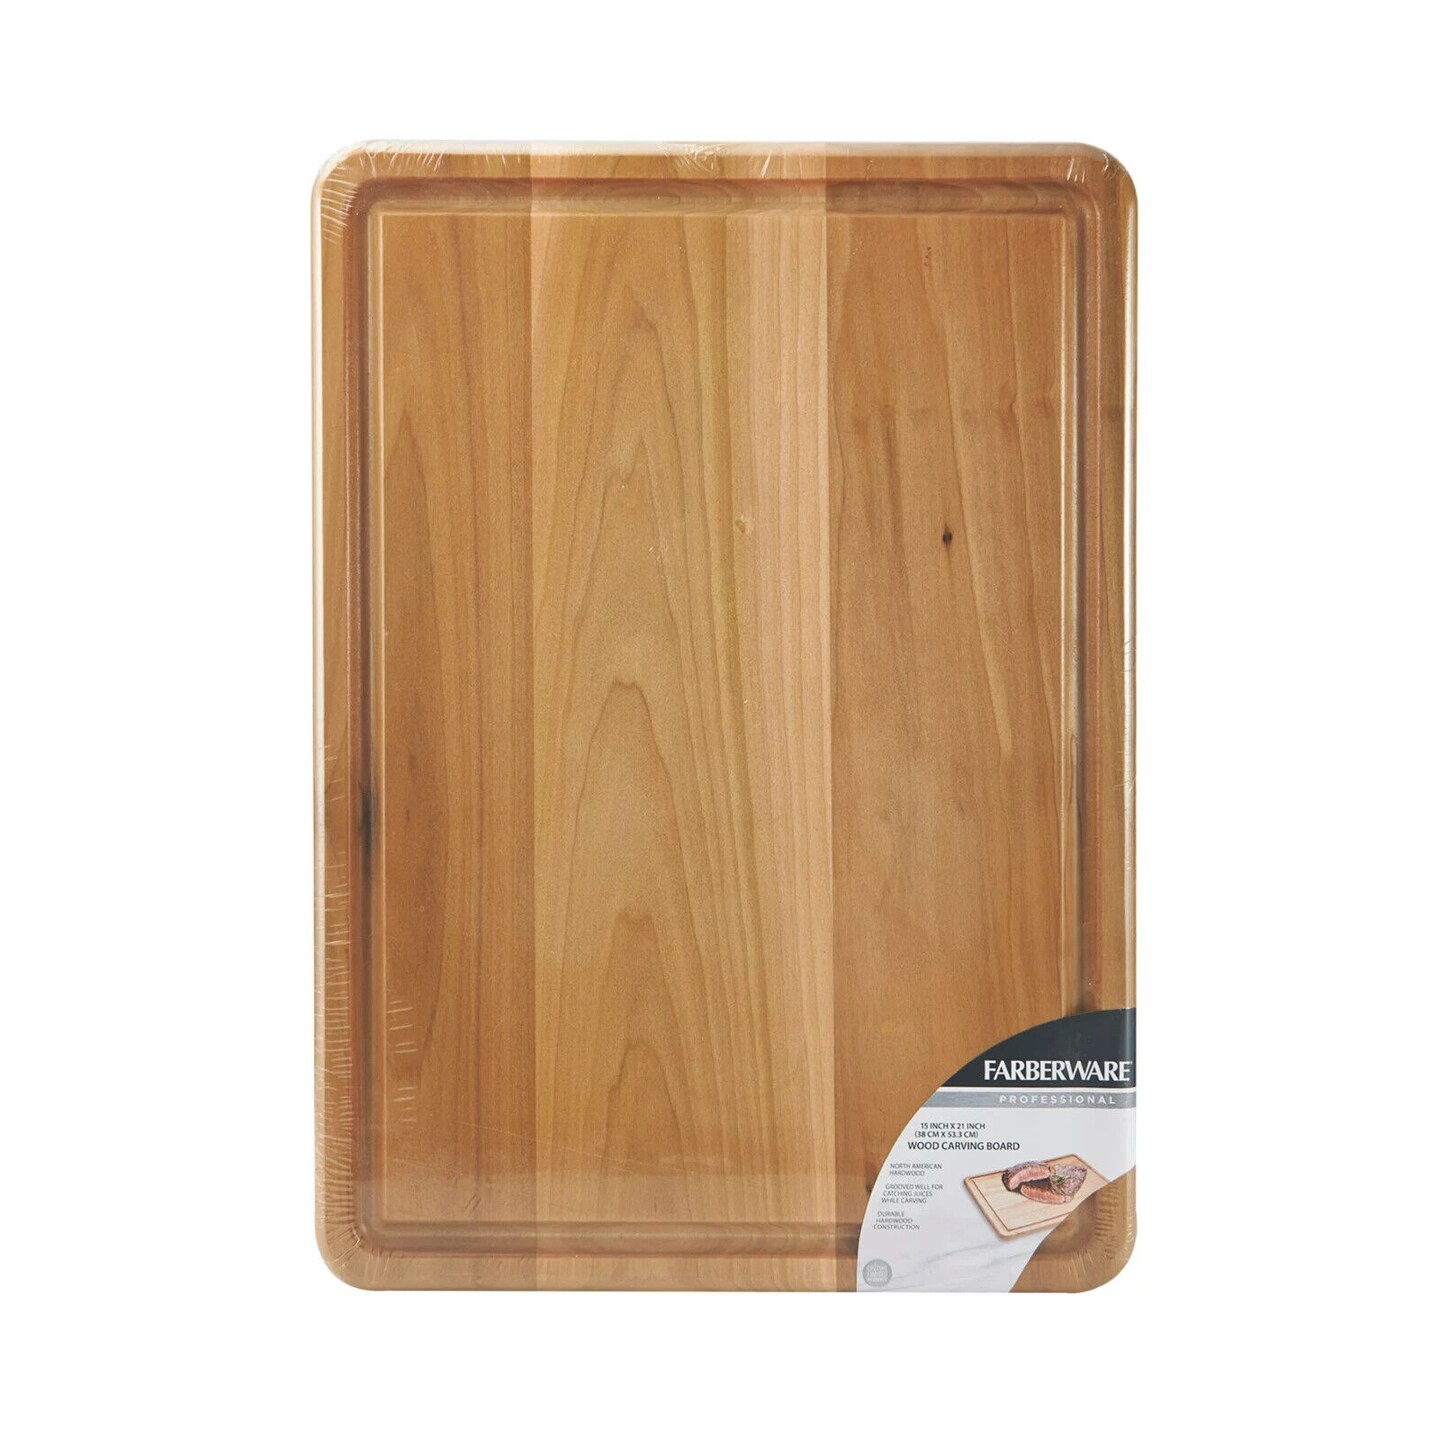 FARBERWARE 15x21 Inches Hardwood Cutting Board